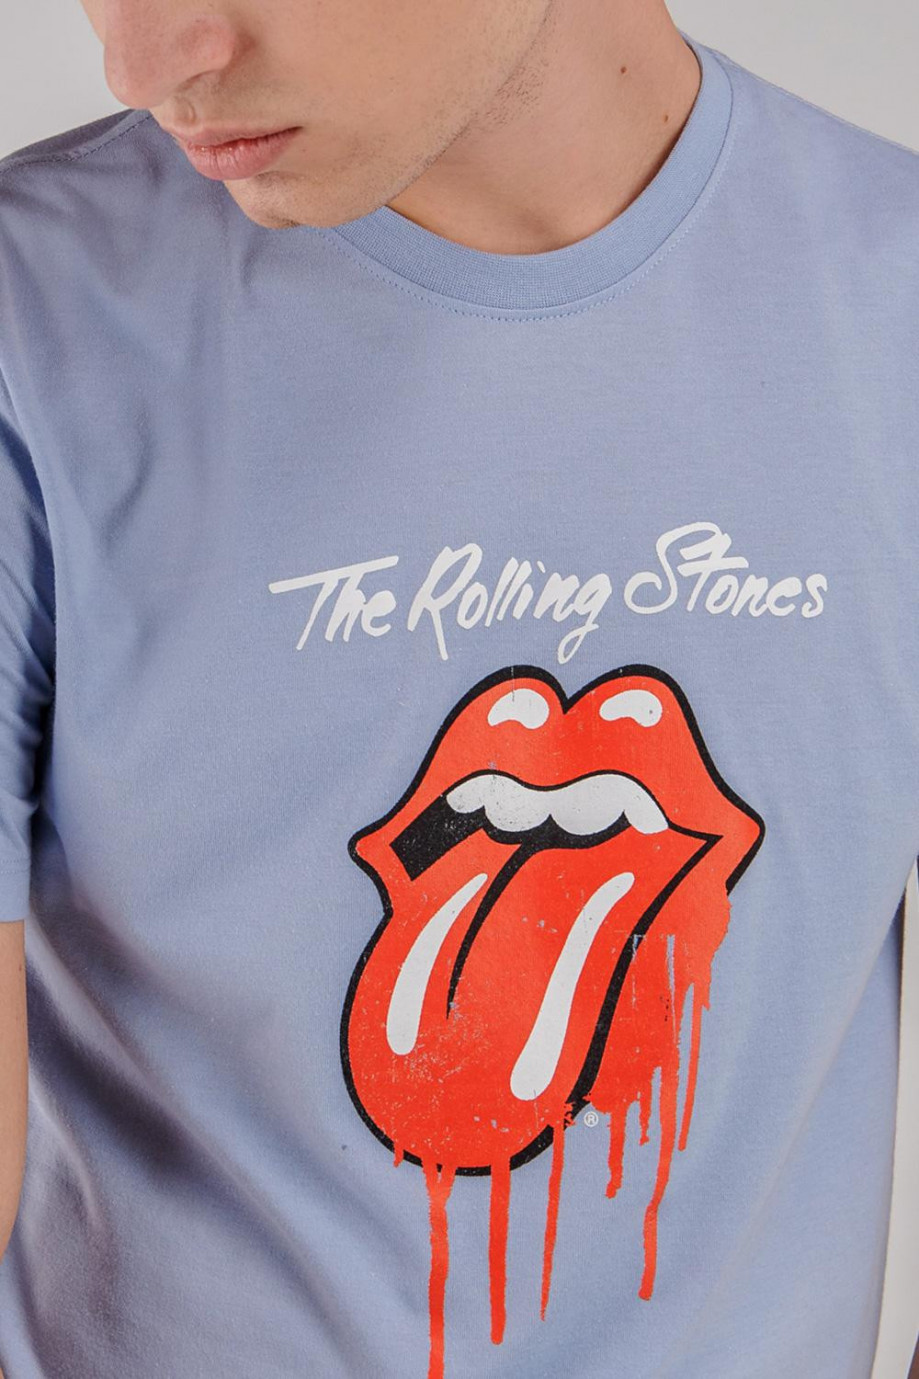 Camiseta manga corta, estampado de Rolling Stones